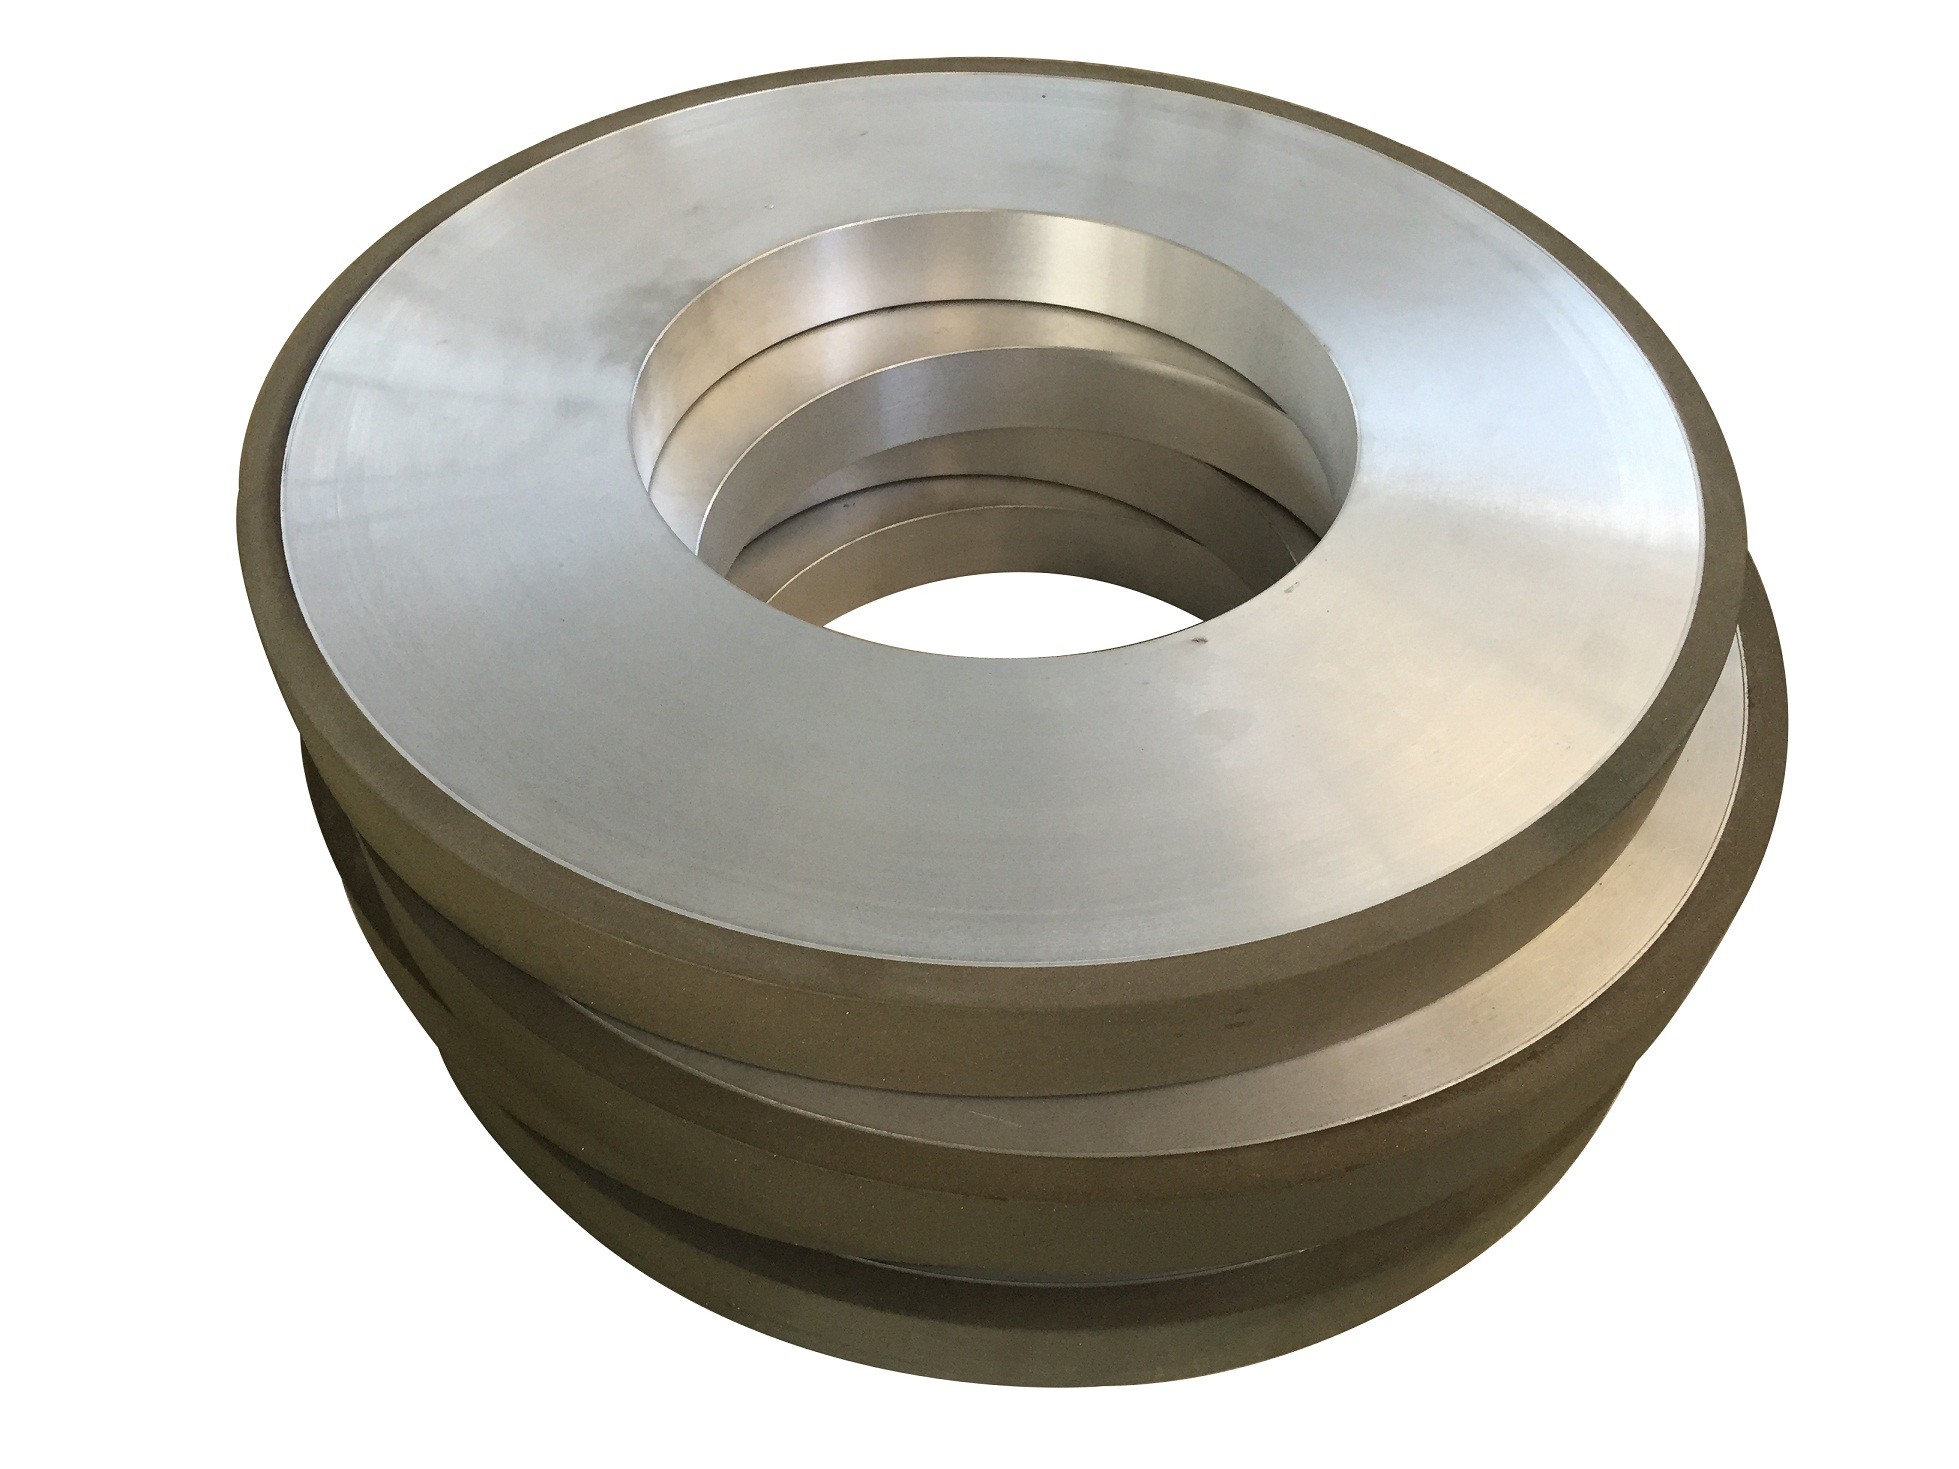 Diameter 350mm Resin Bonded Diamond Grinding Wheels For Carbide Ceramic Tile Disc